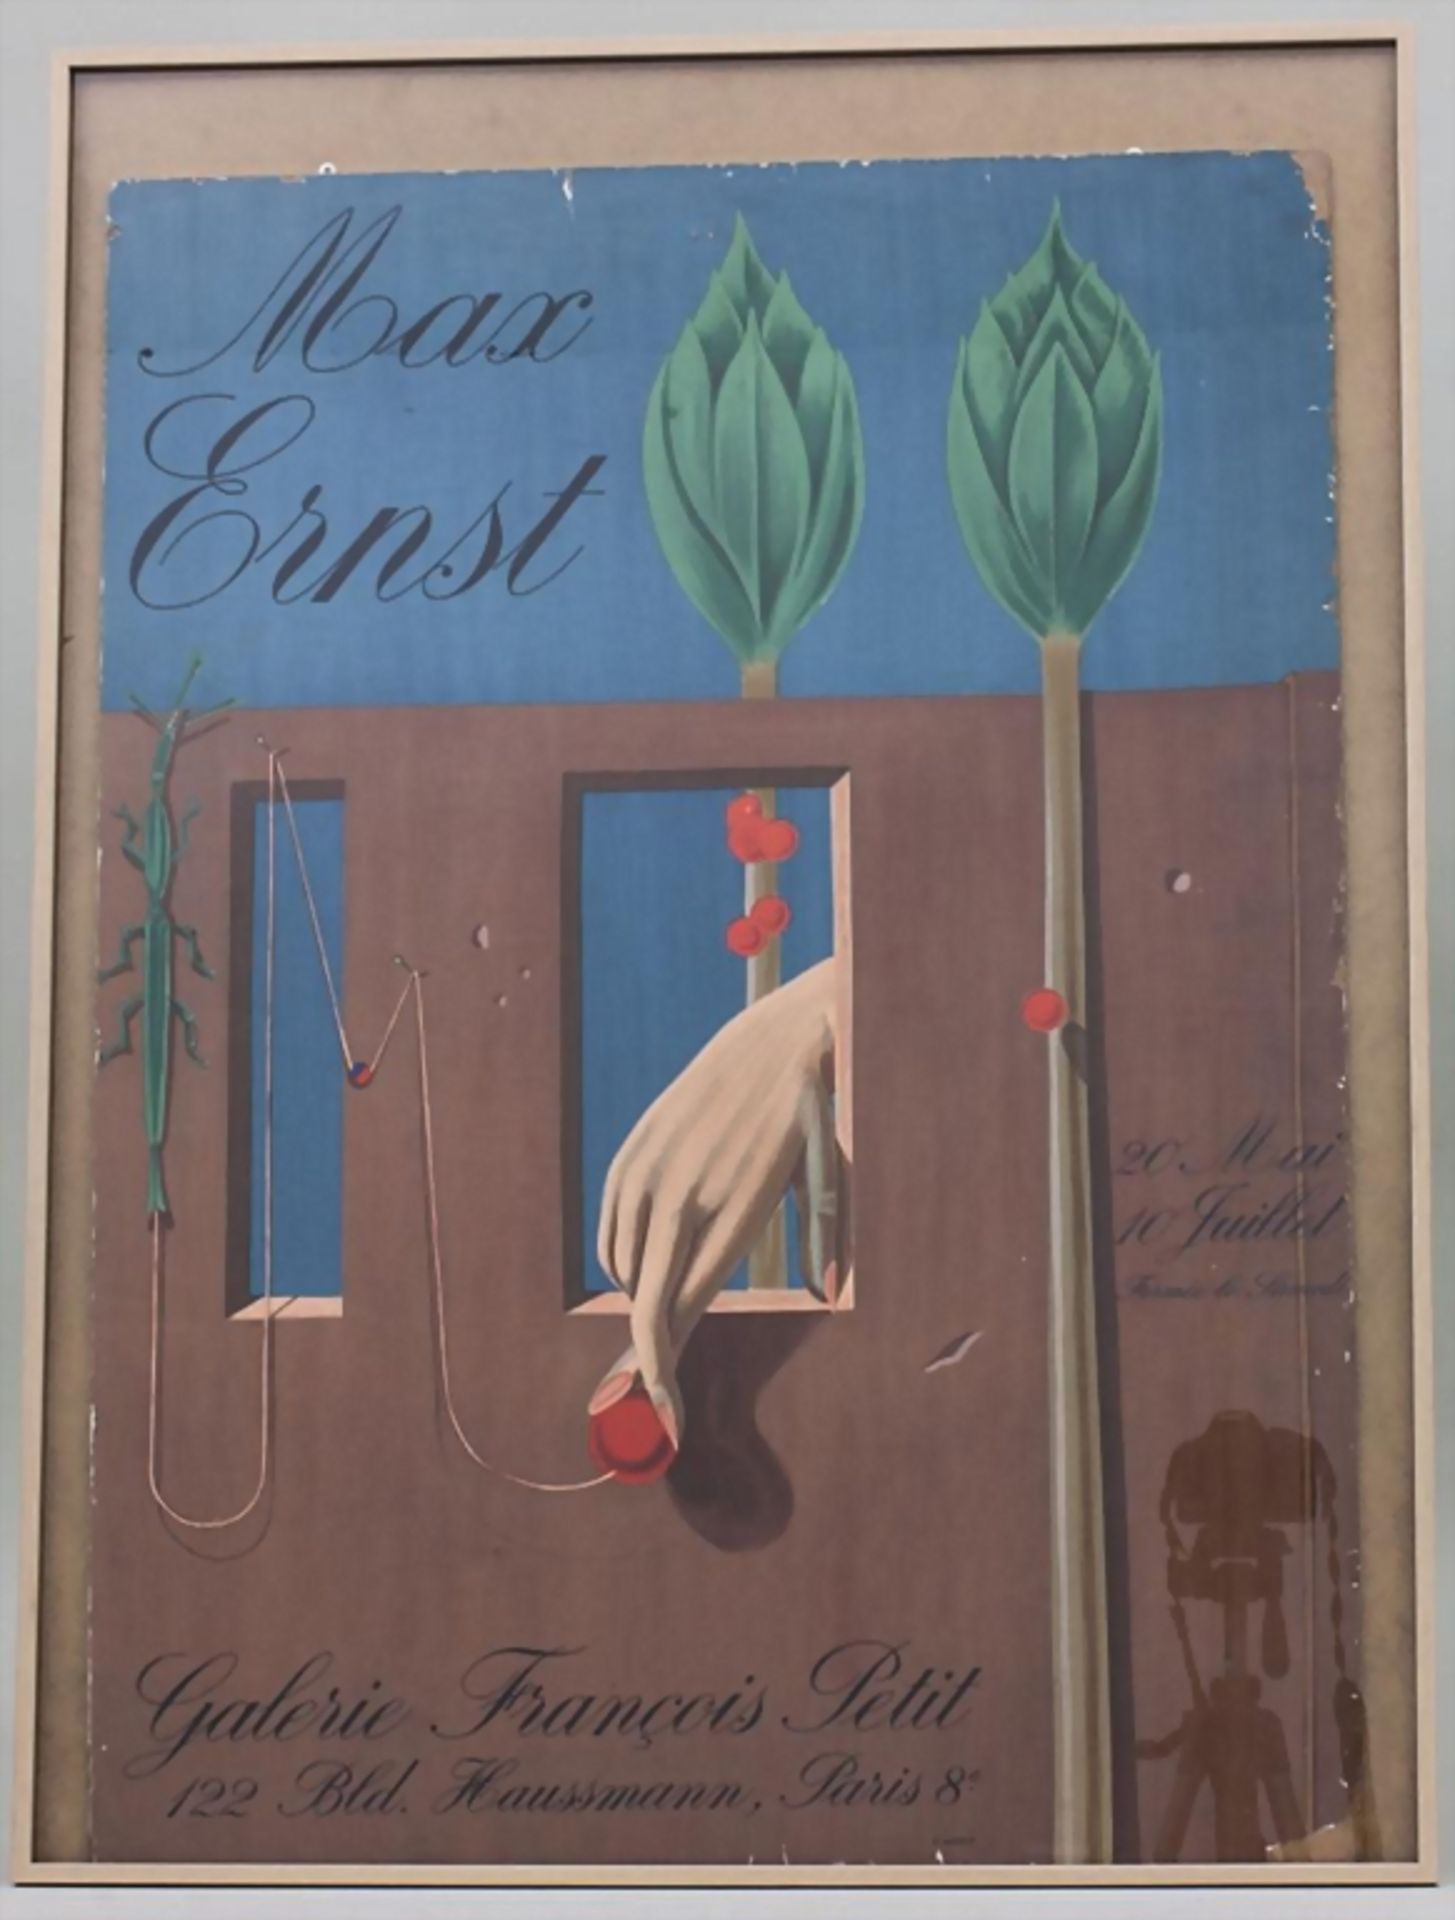 Ausstellungs-Plakat Max Ernst / Exhibition Poster Max Ernst, Paris, 1969Technik: Druck